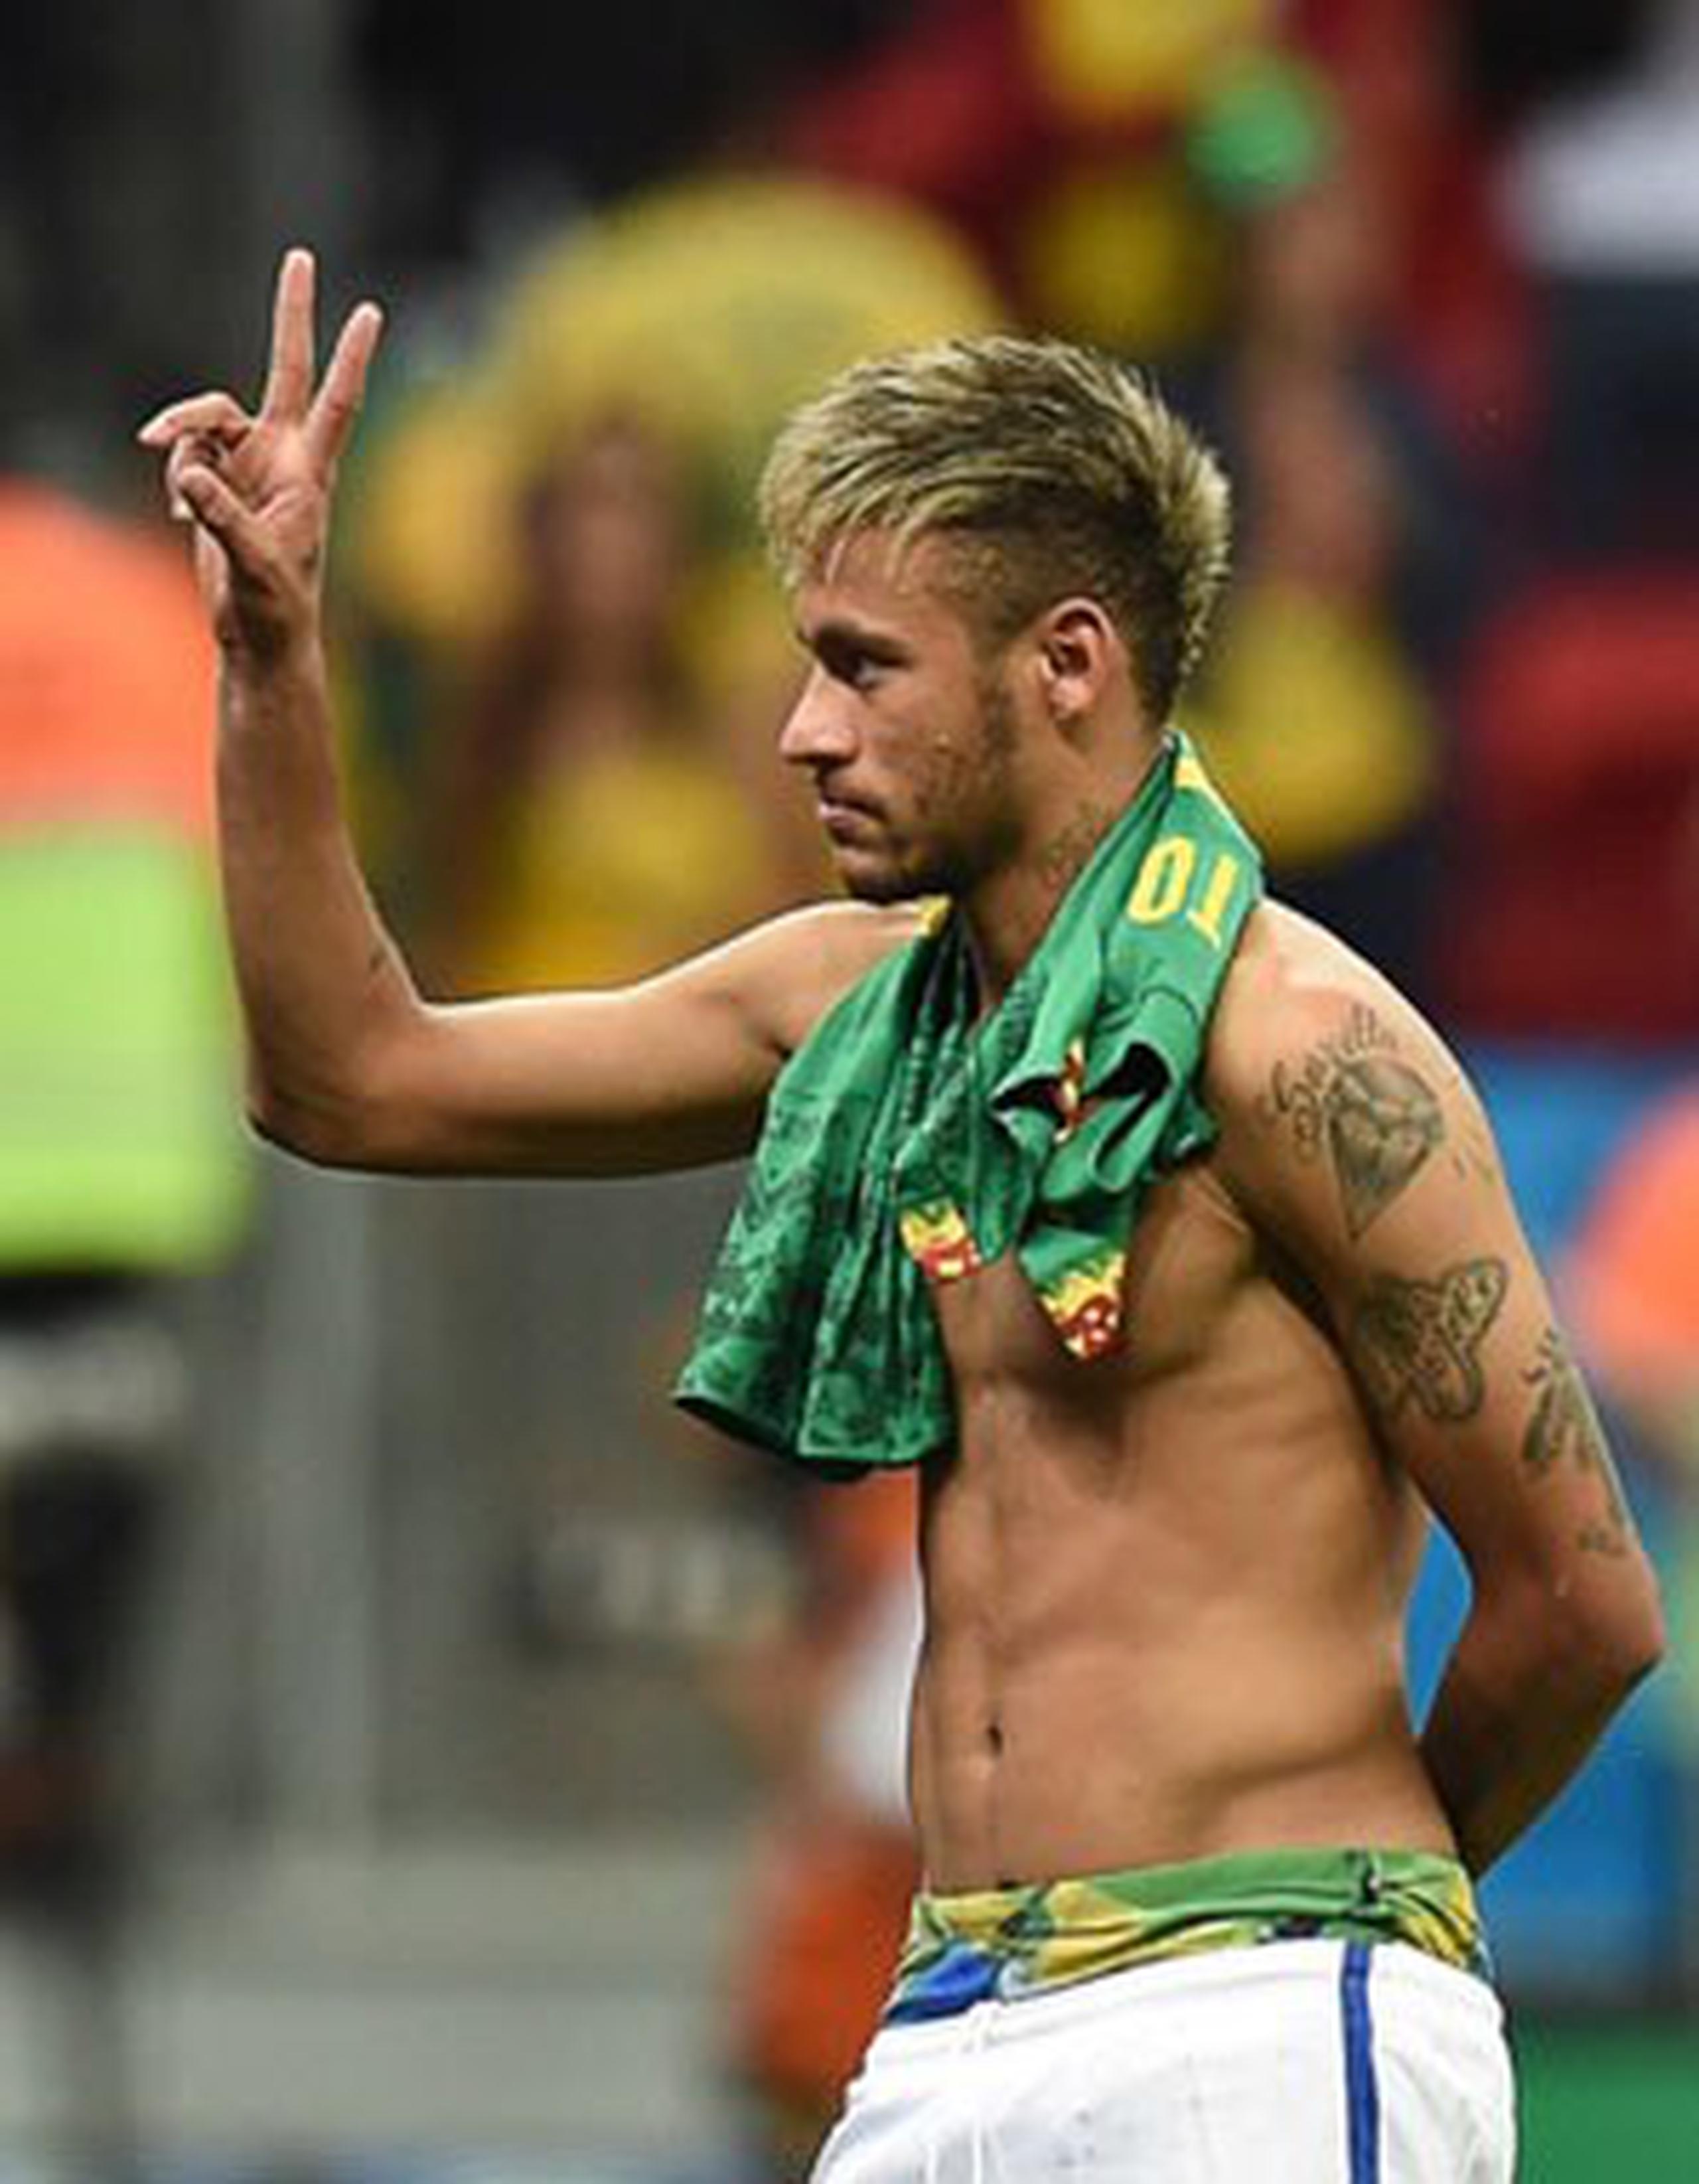 Neymar expuso parcialmente sus coloridos calzoncillos después del partido Brasil vs Camerún. (AFP PHOTO / VANDERLEI ALMEIDA)